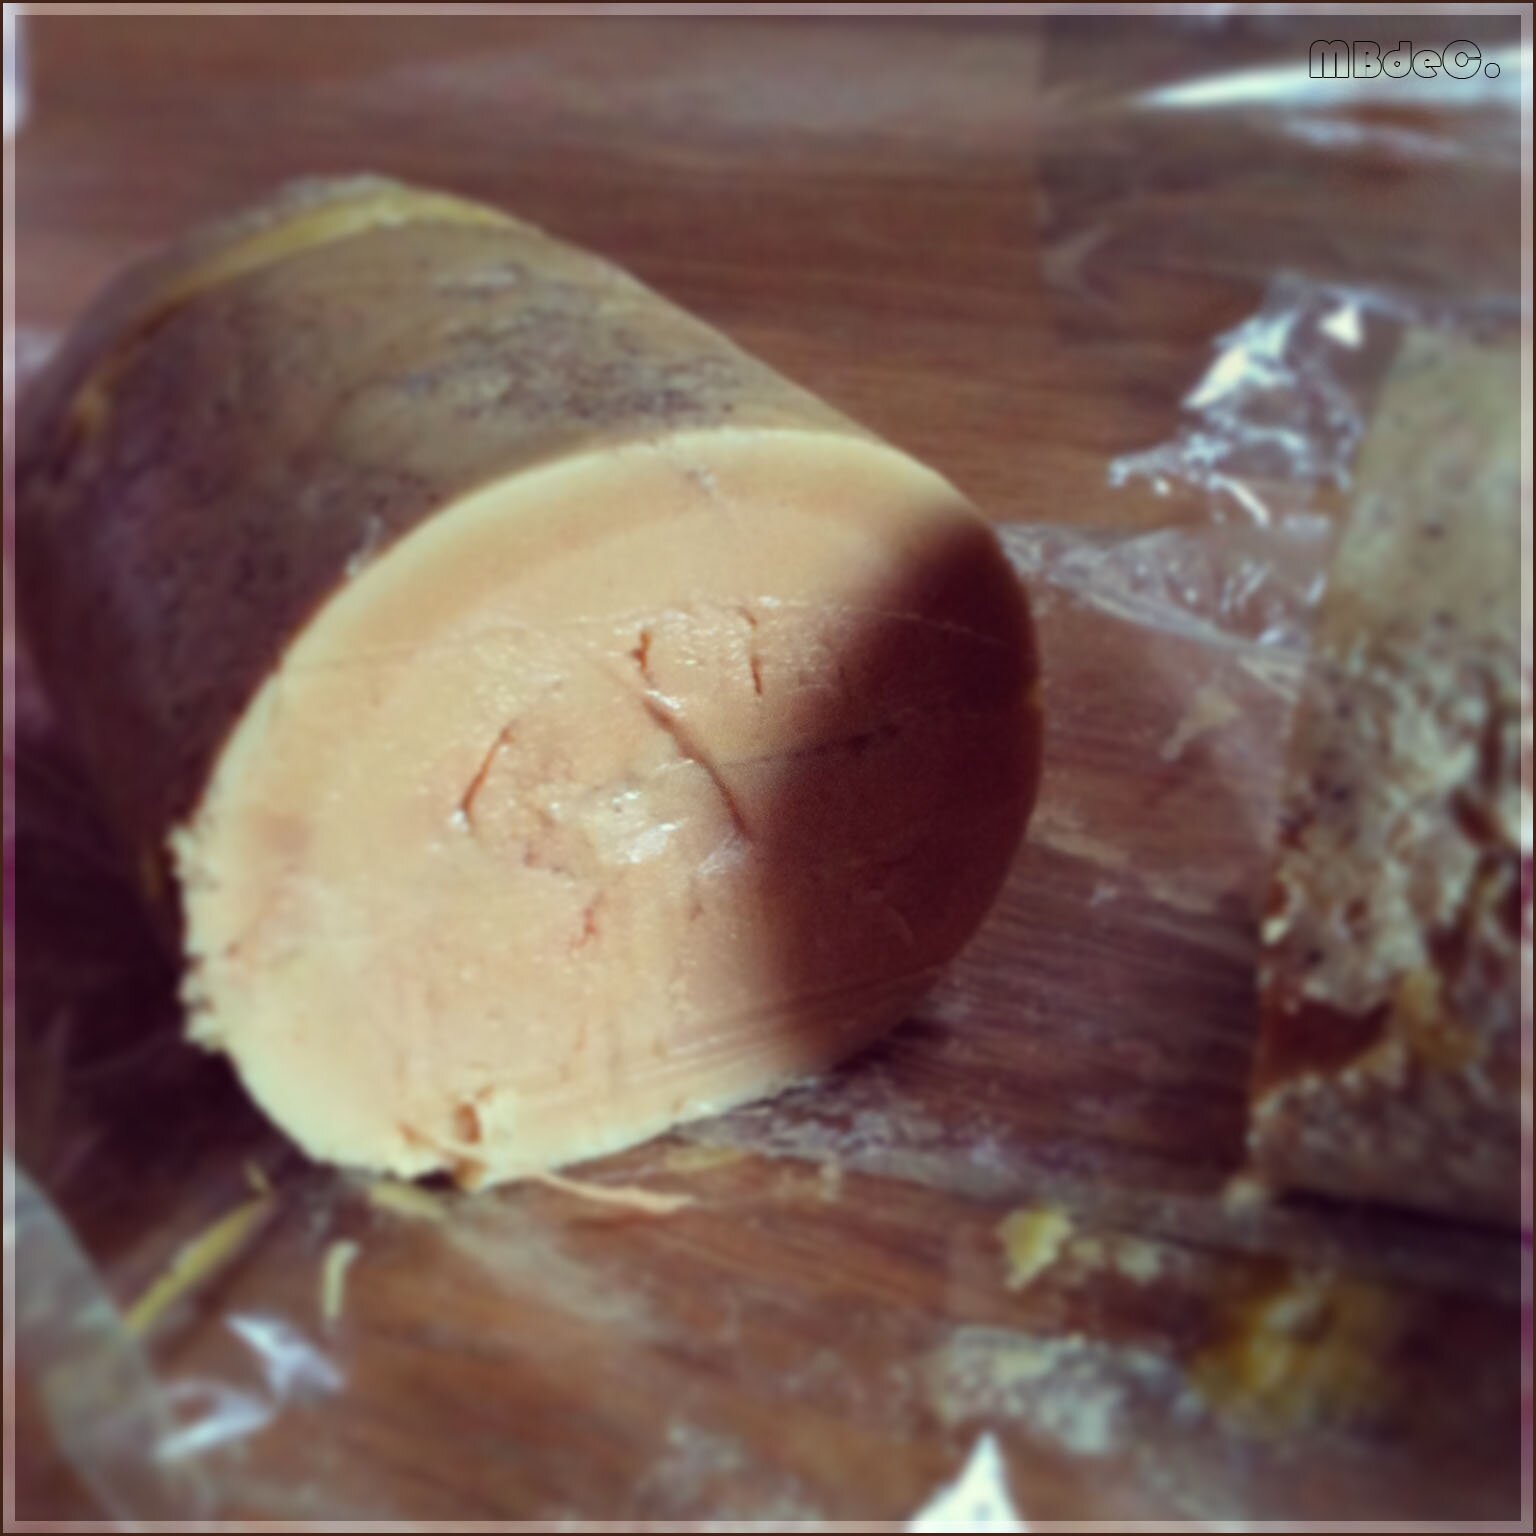 Foie gras maison poché, recette facile pour un foie gras divin et réussi